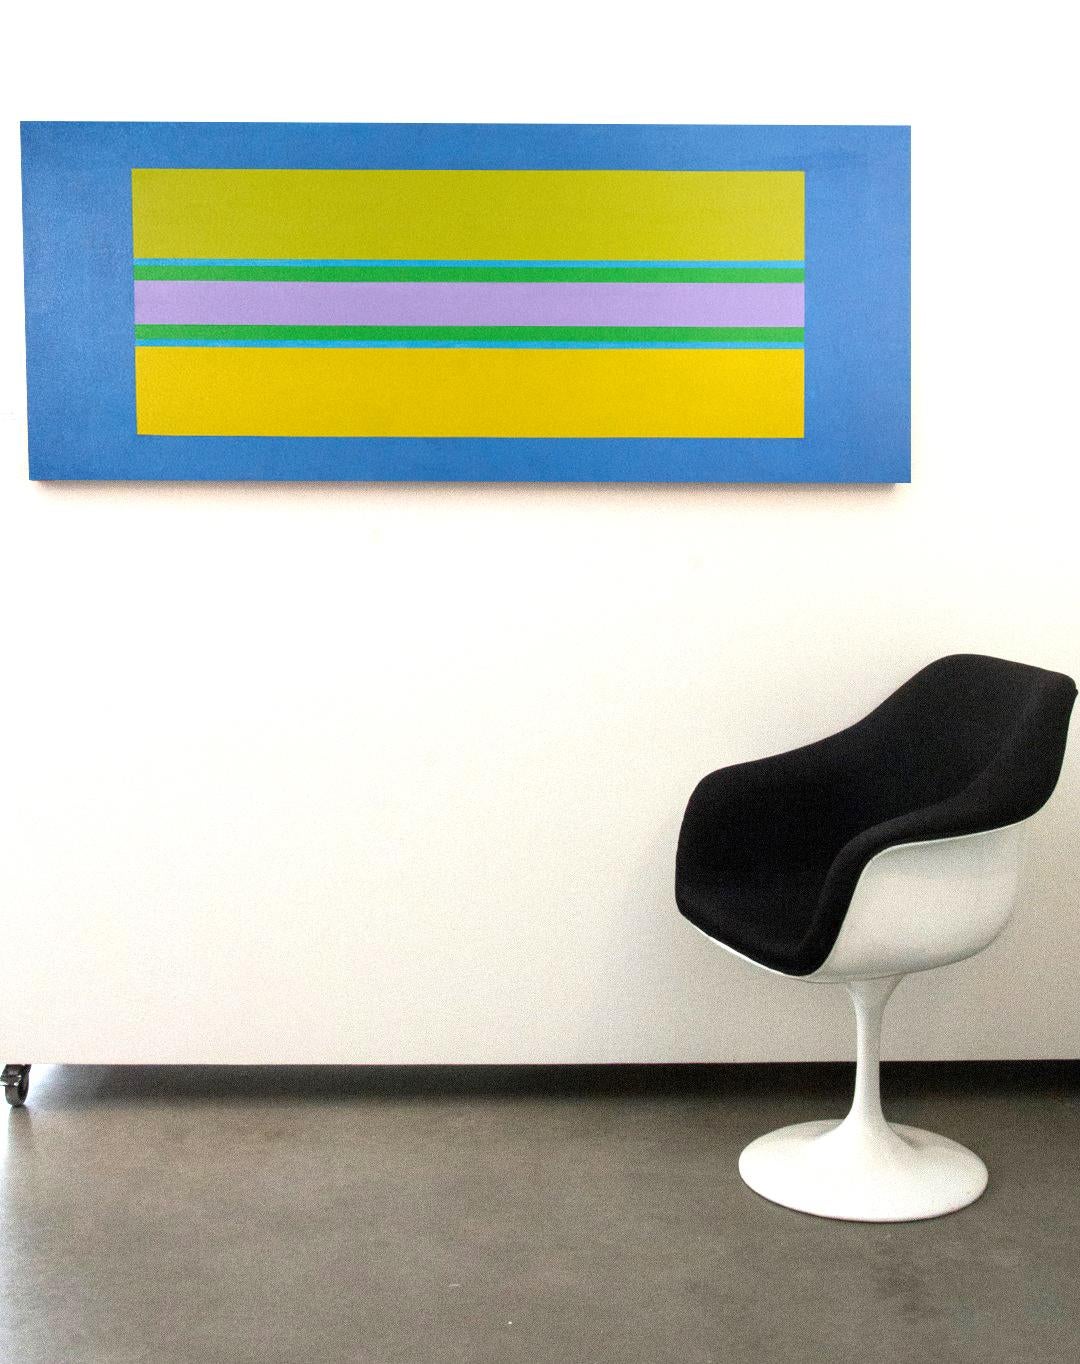 Auf diesem Acrylgemälde von Burton Kramer schweben horizontale Streifen in Zitronengelb, Rosarot und Grün auf einem veilchenblauen Grund. Die ausgewogene geometrische Komposition ist eine Meditation über die Überschneidung von Musik, Farbe und Form.